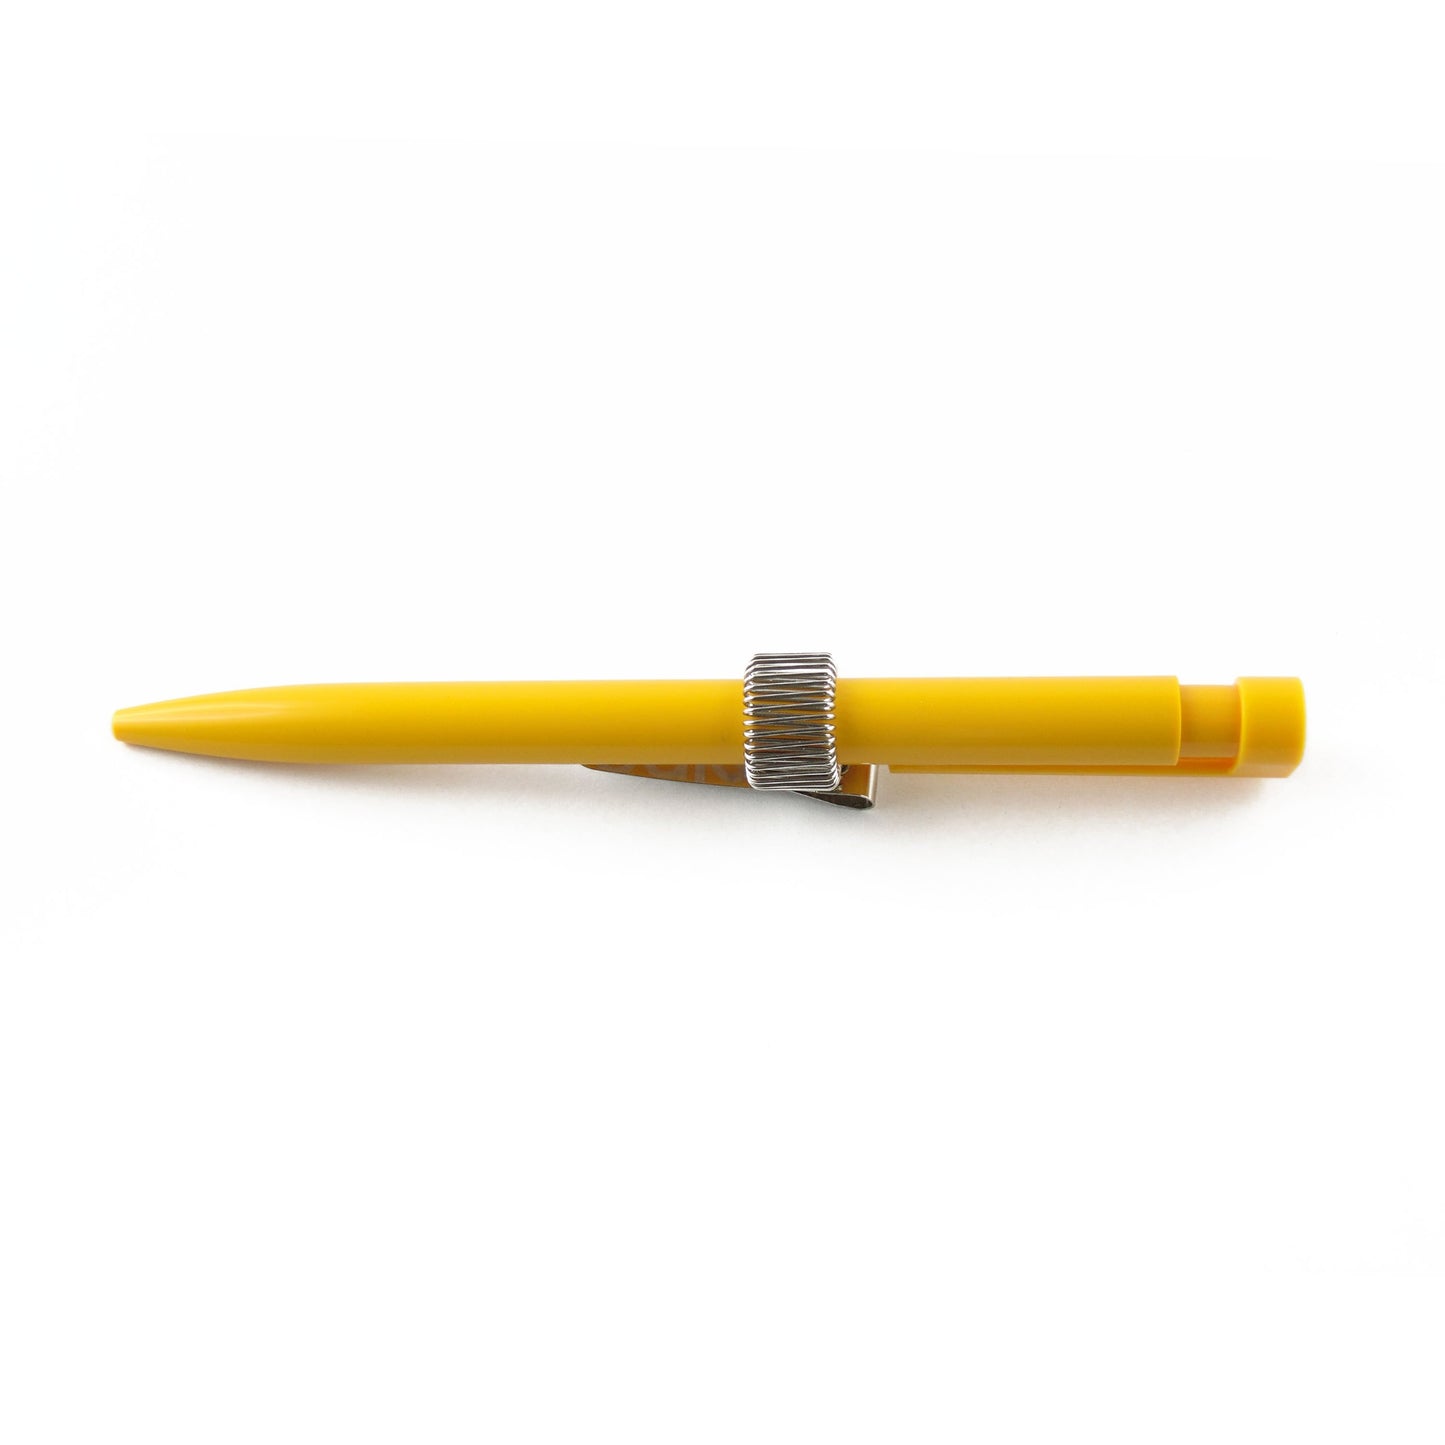 Beispiel Metallstifthalter mit Stift